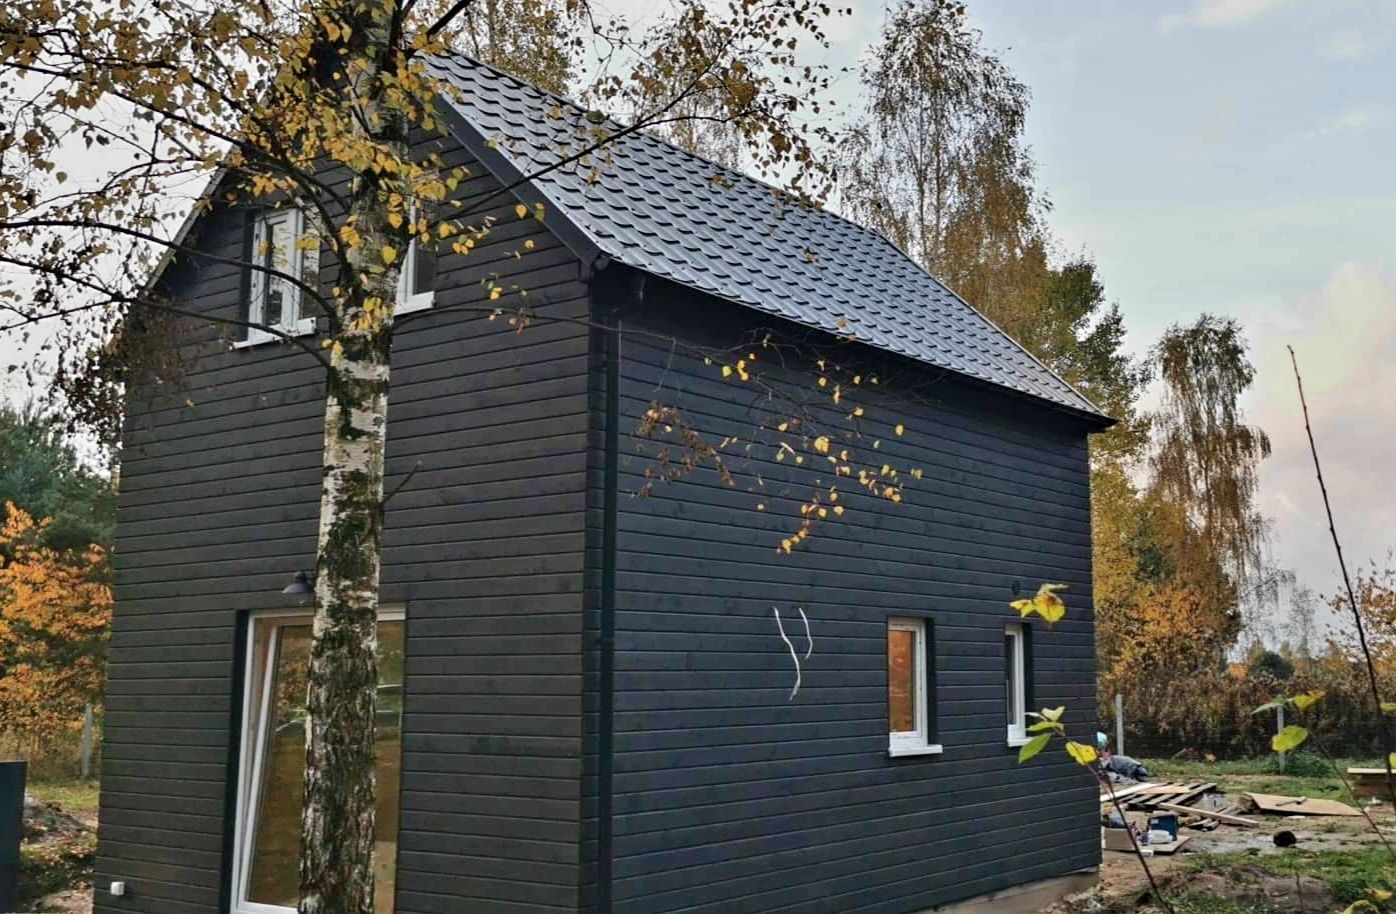 Dom całoroczny drewniany od 35m2 - Budujemy na terenie całego kraju